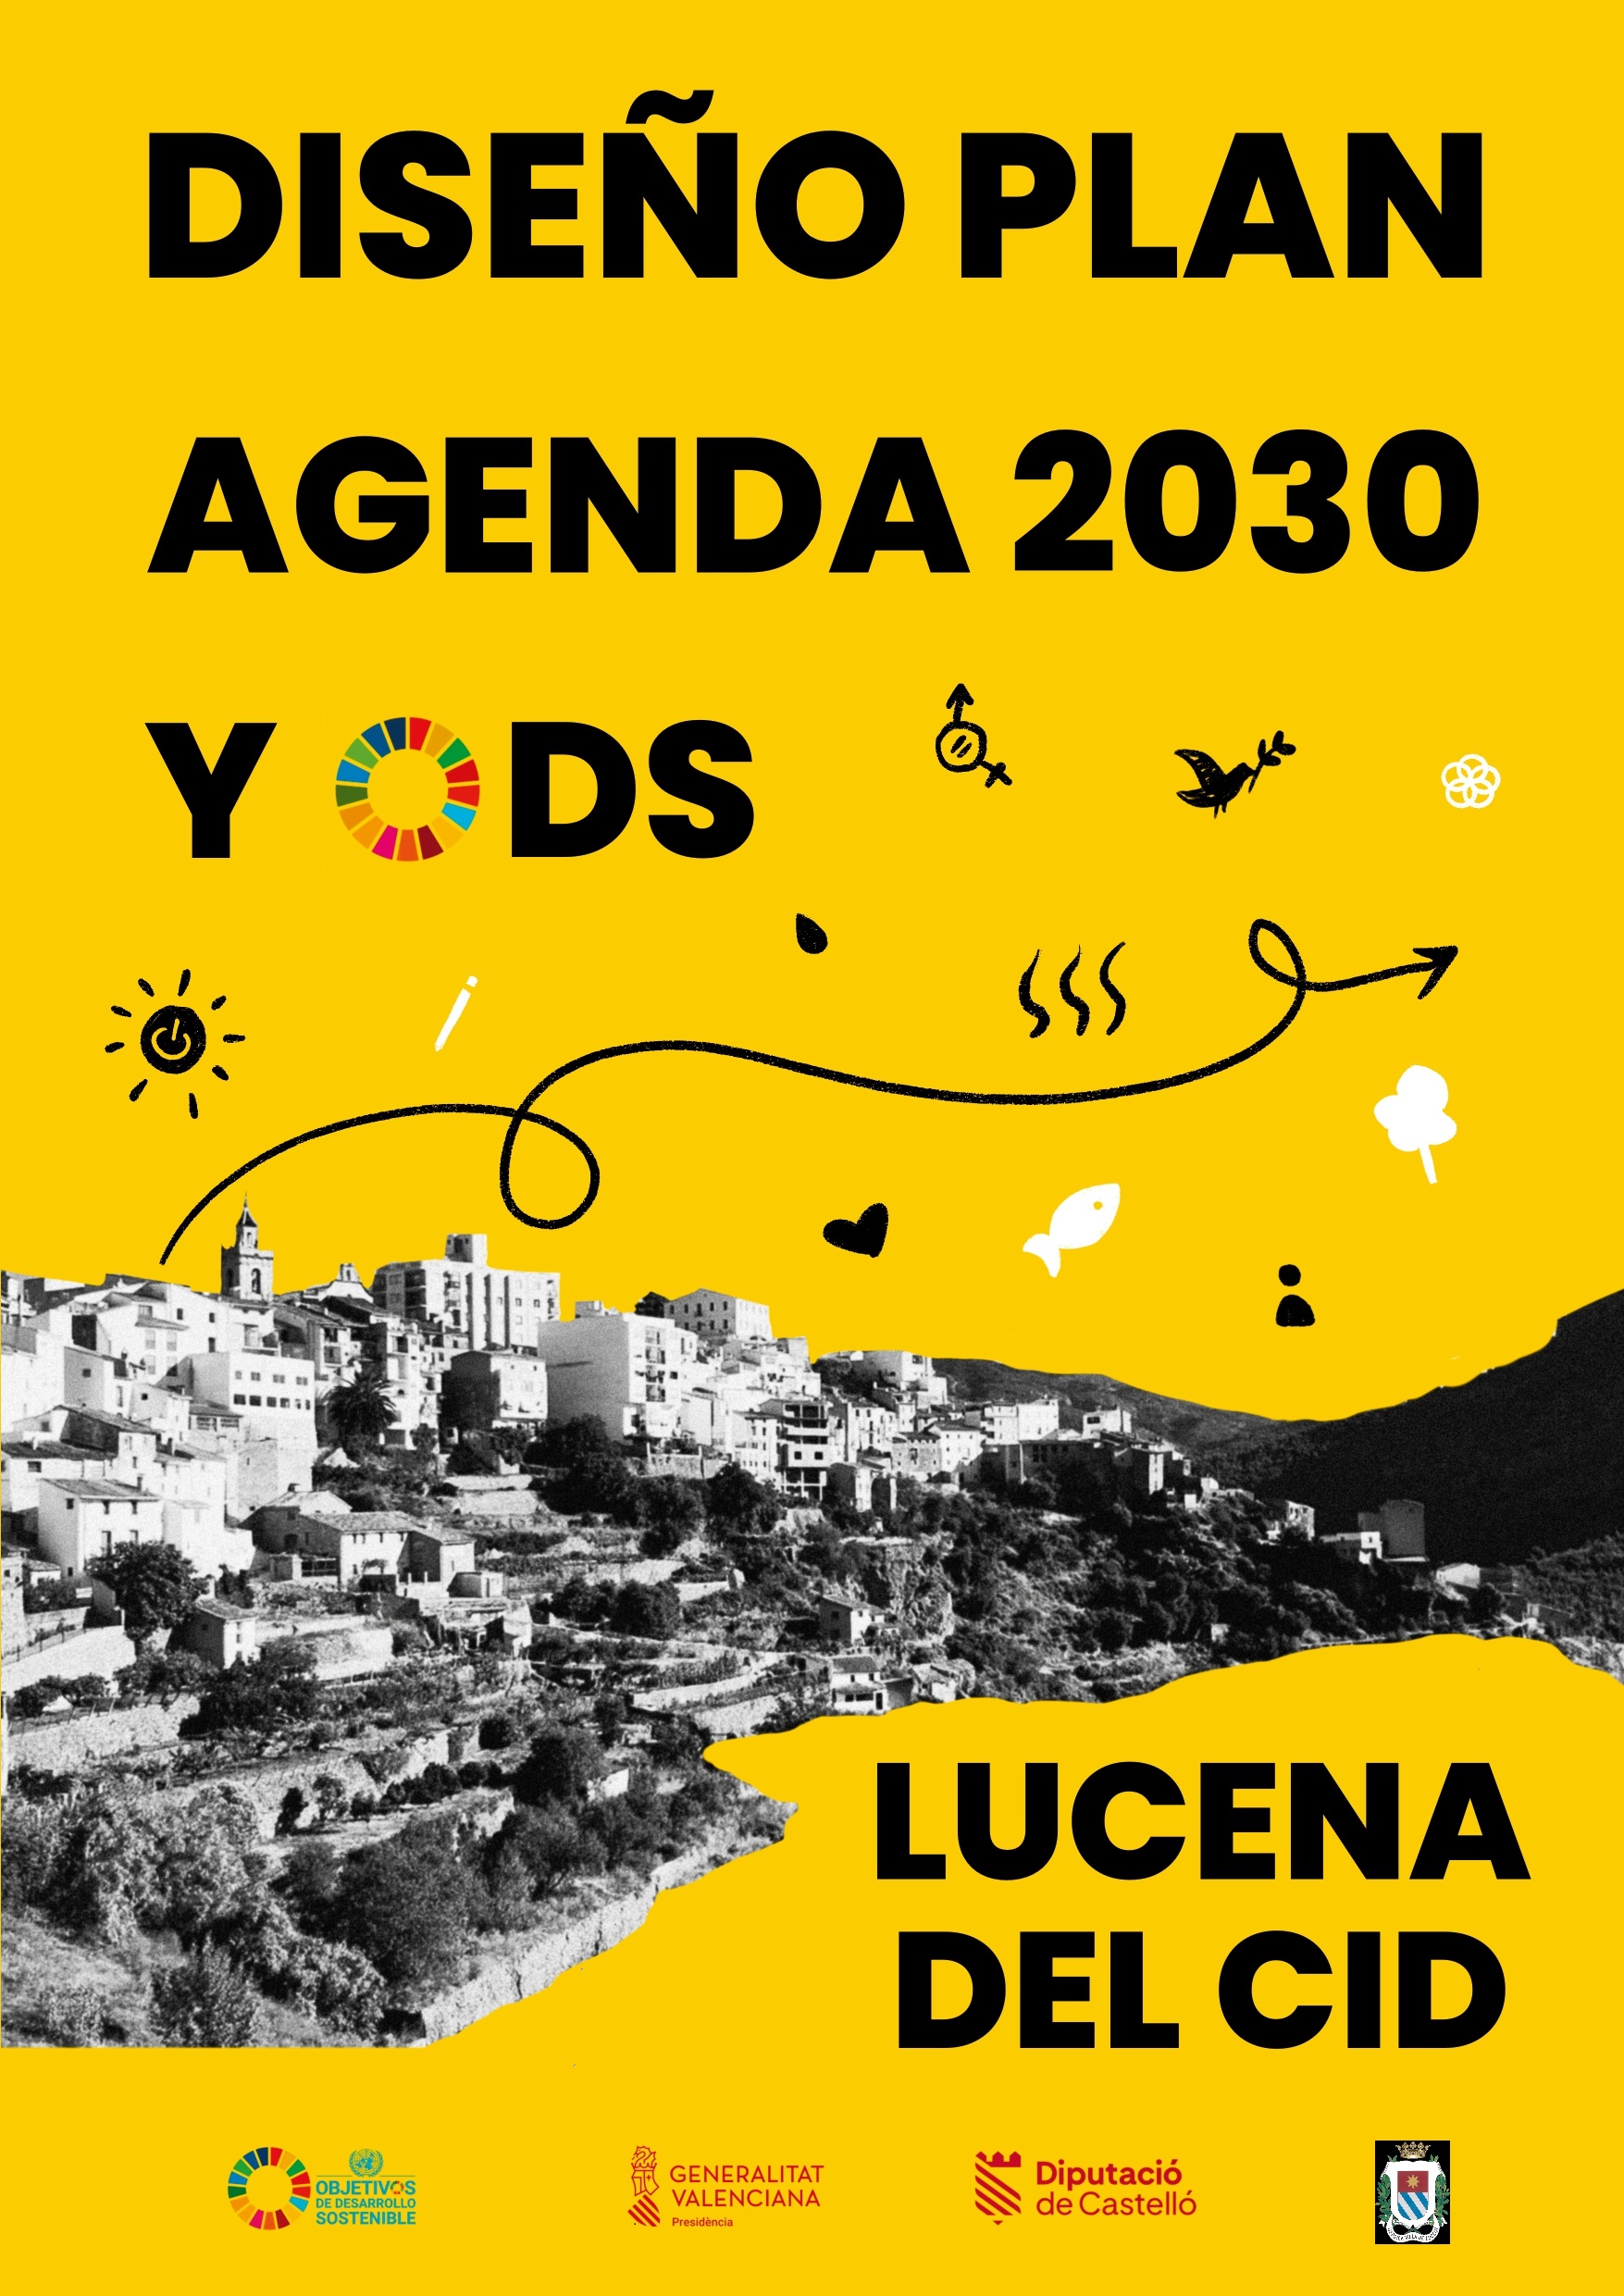 El Ayuntamiento de Lucena del Cid, comprometido con el desarrollo sostenible, diseñará su Plan de Agenda 2030 y ODS.